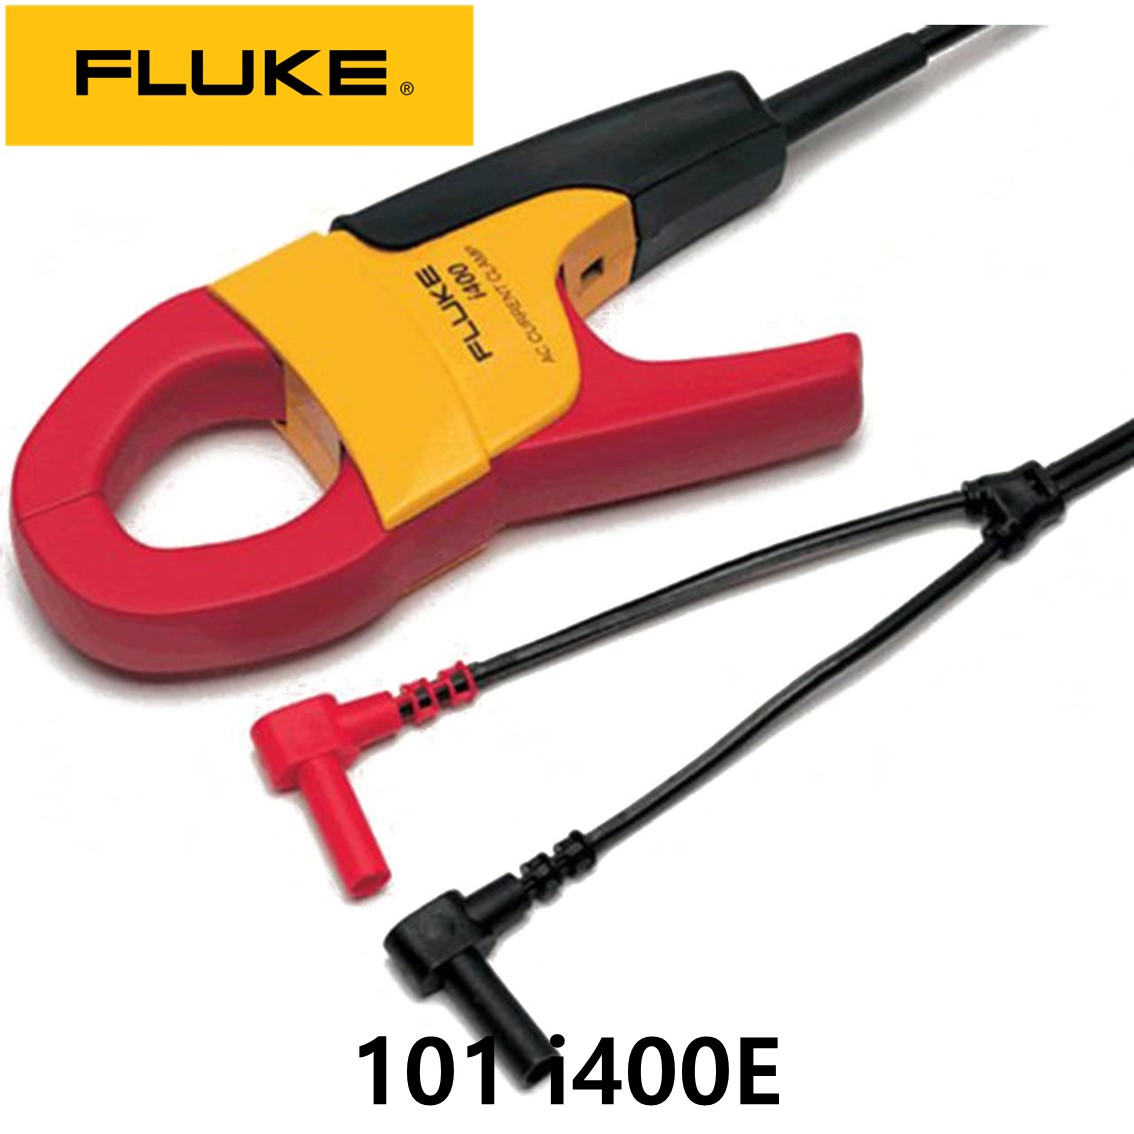 [ Fluke 101 i400E ] 포켓 테스터기 멀티테스터기 플루크 101 ( 클램프 AC전류프로브 포함 )